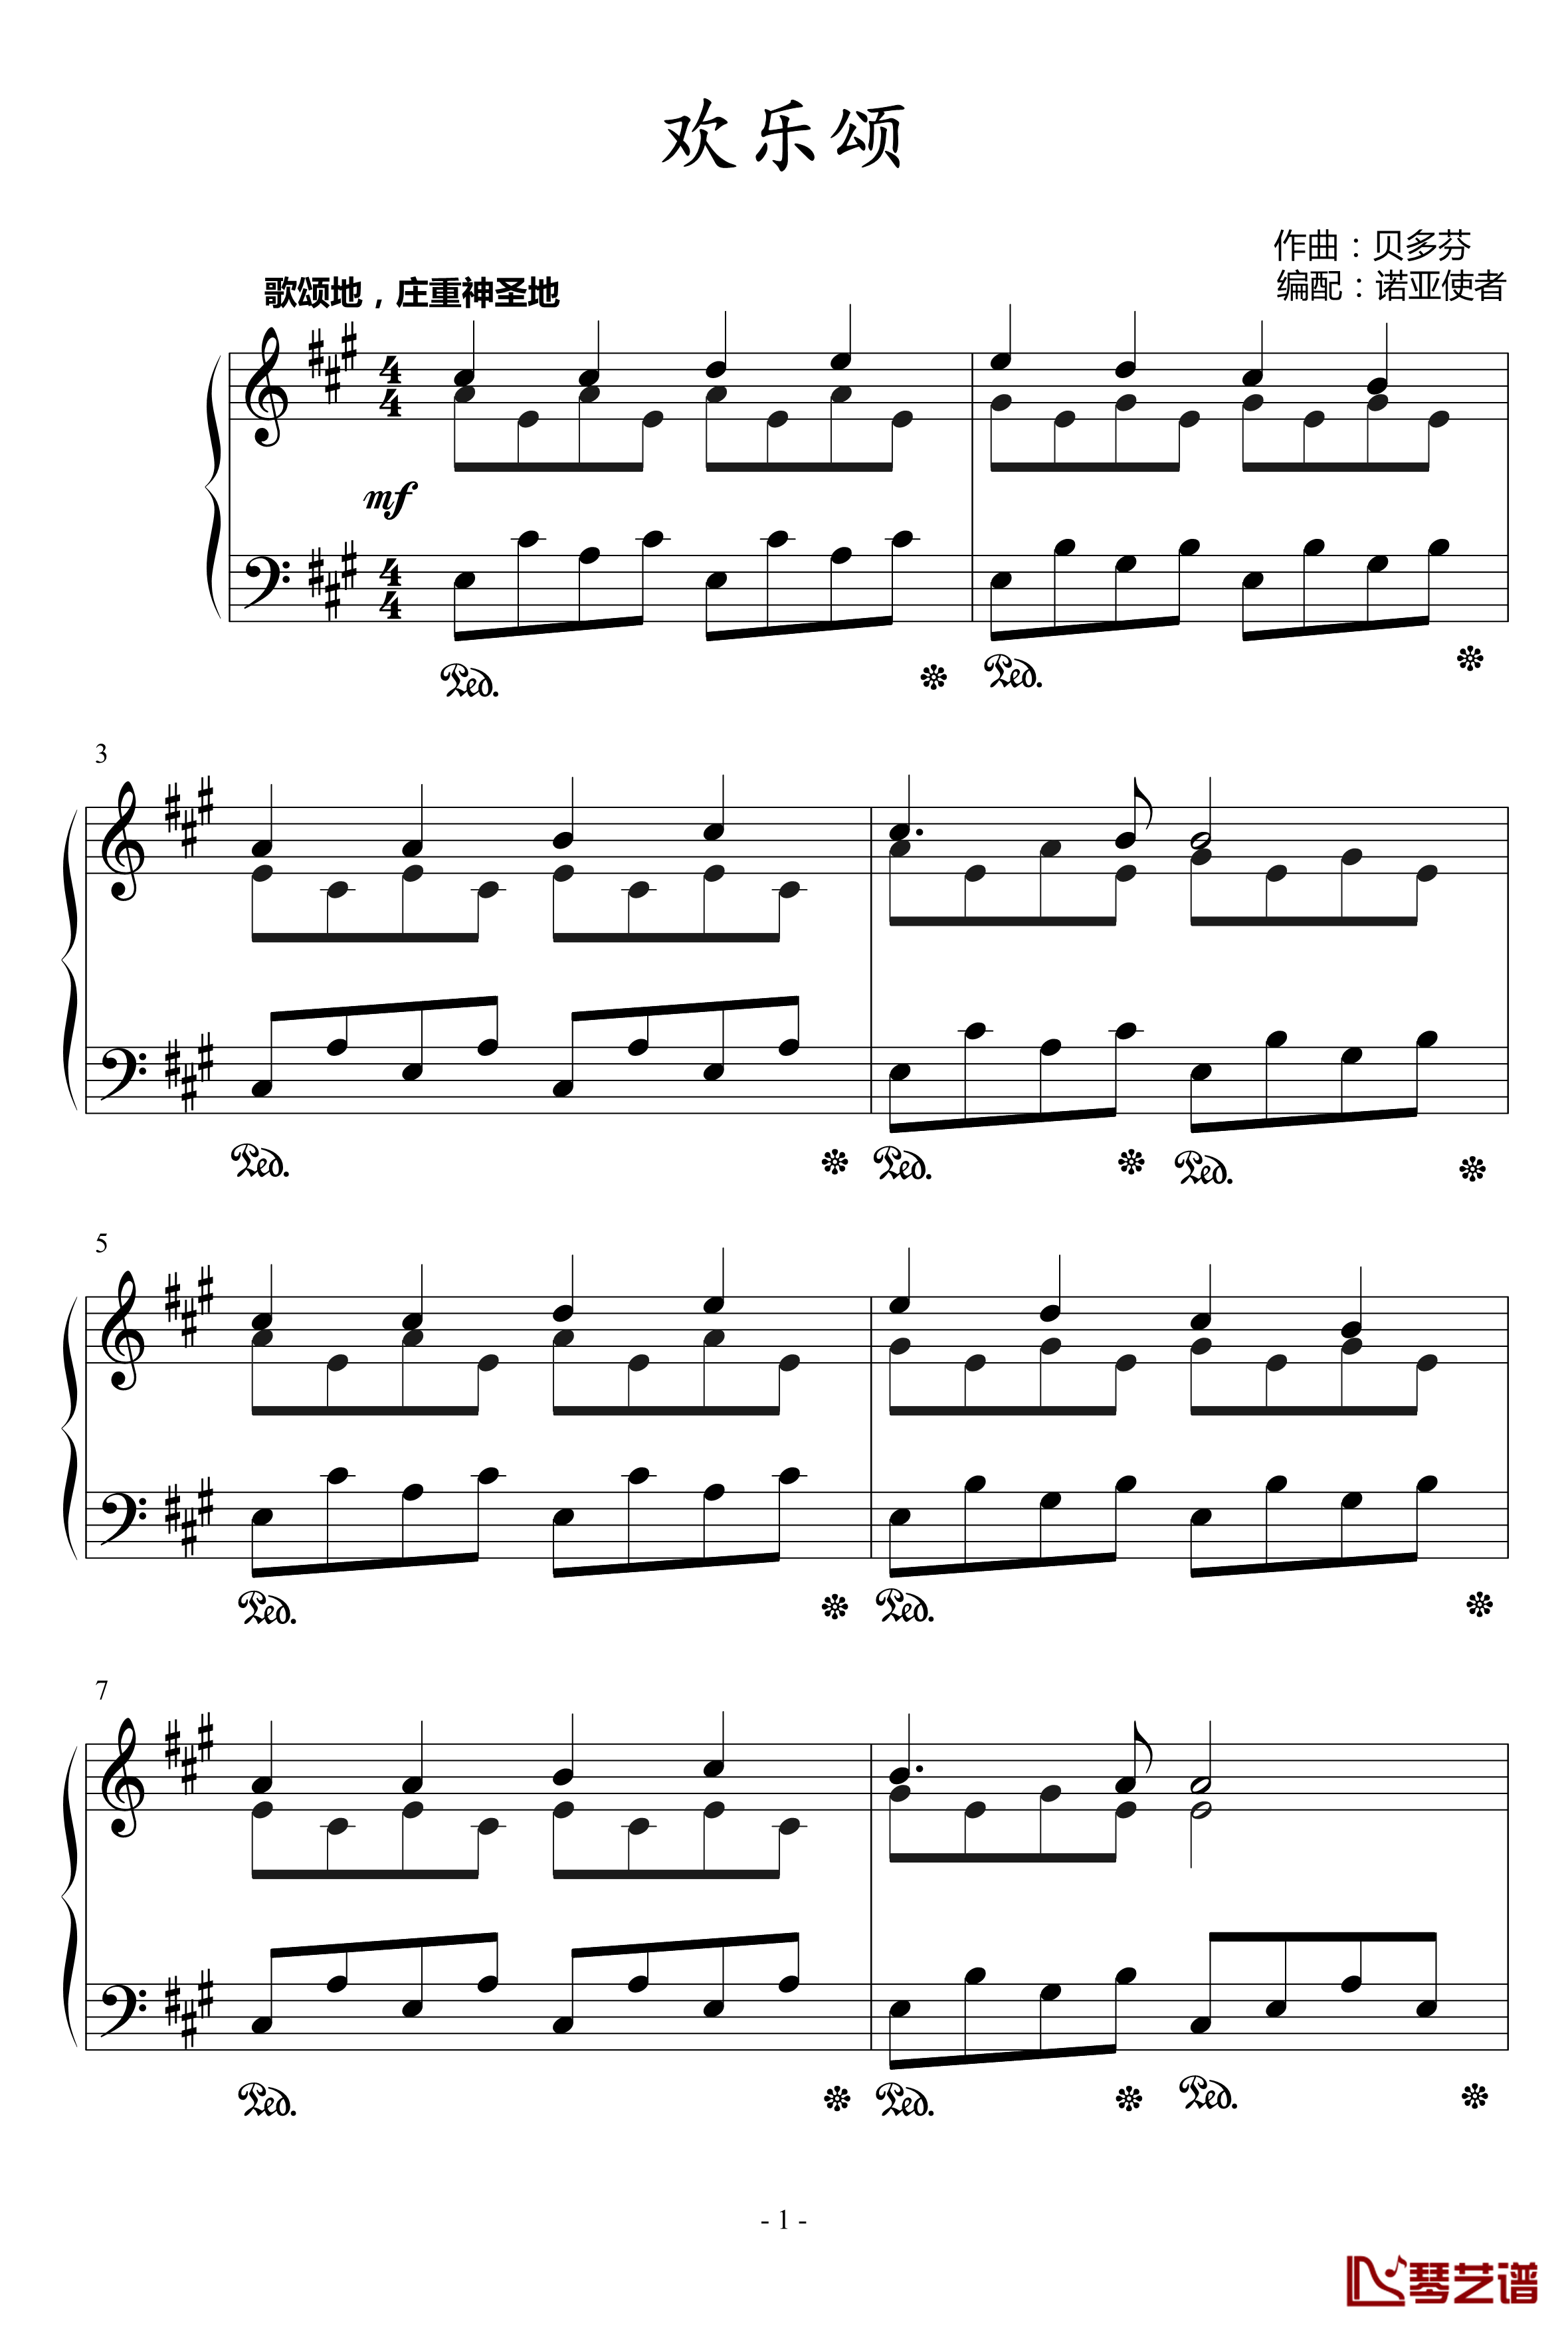 欢乐颂钢琴谱-歌颂神圣版-贝多芬-beethoven1